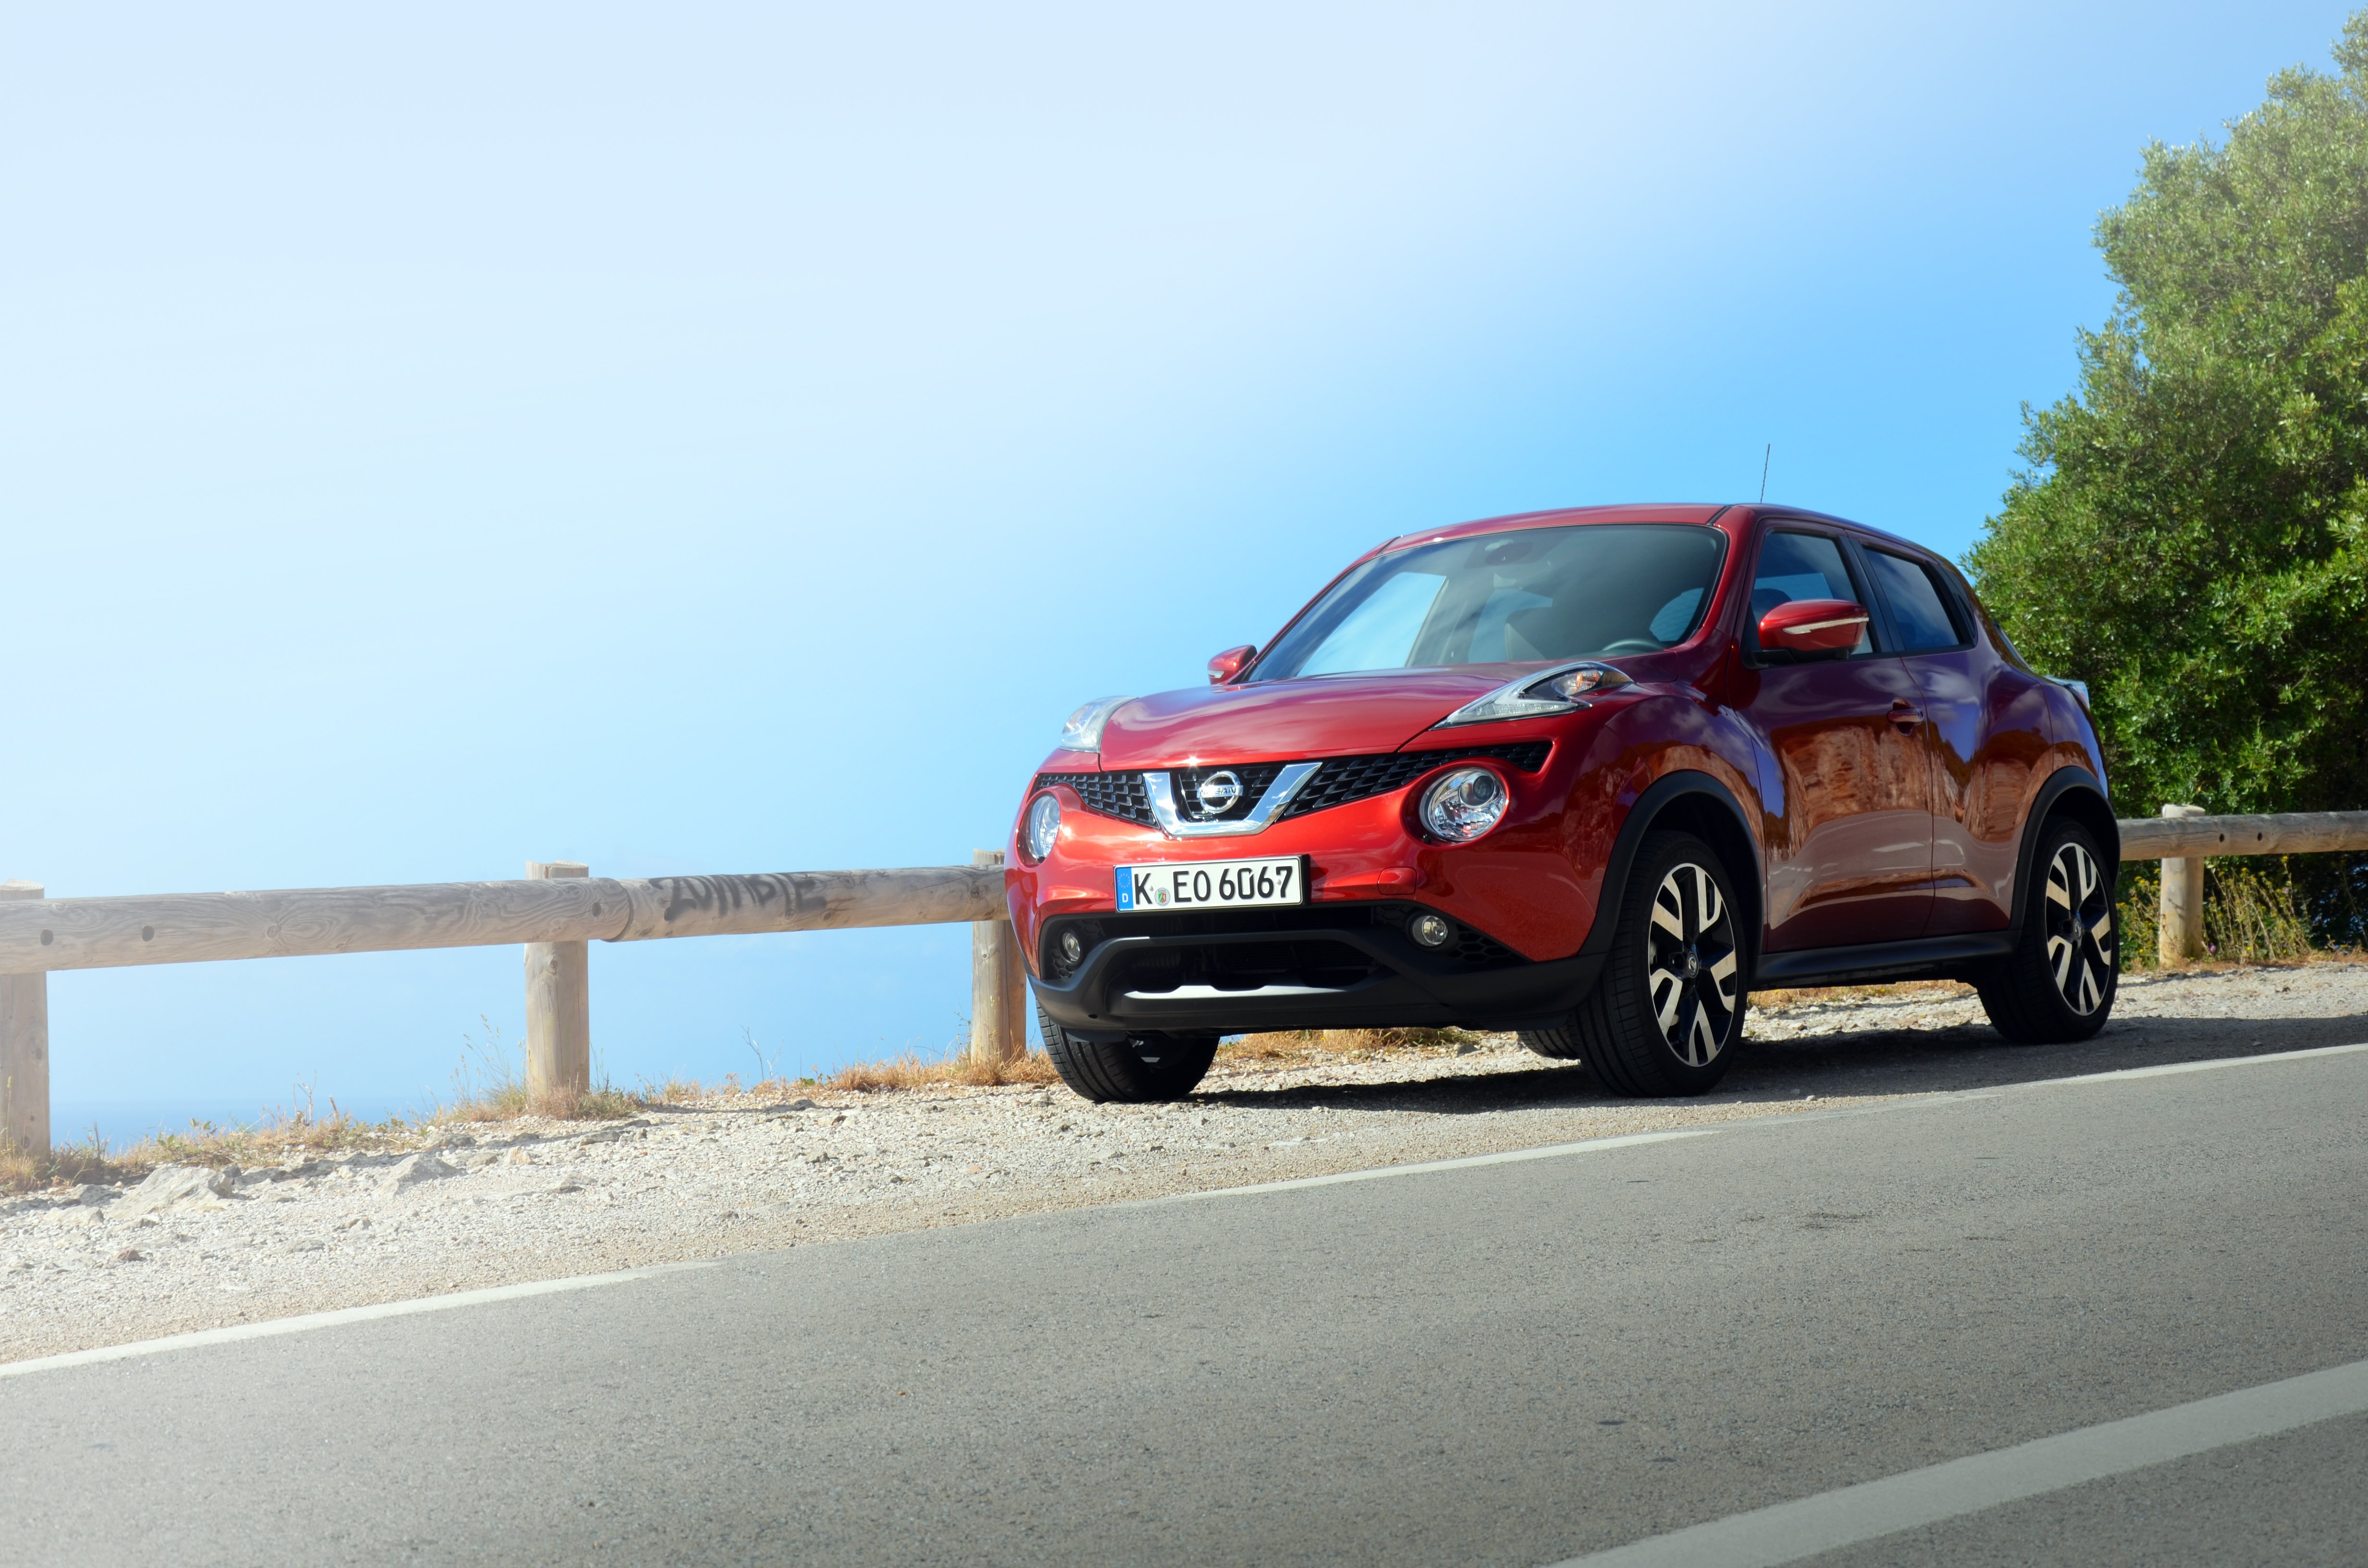 Kurztest: Nissan Juke 2014 #JukeDNA